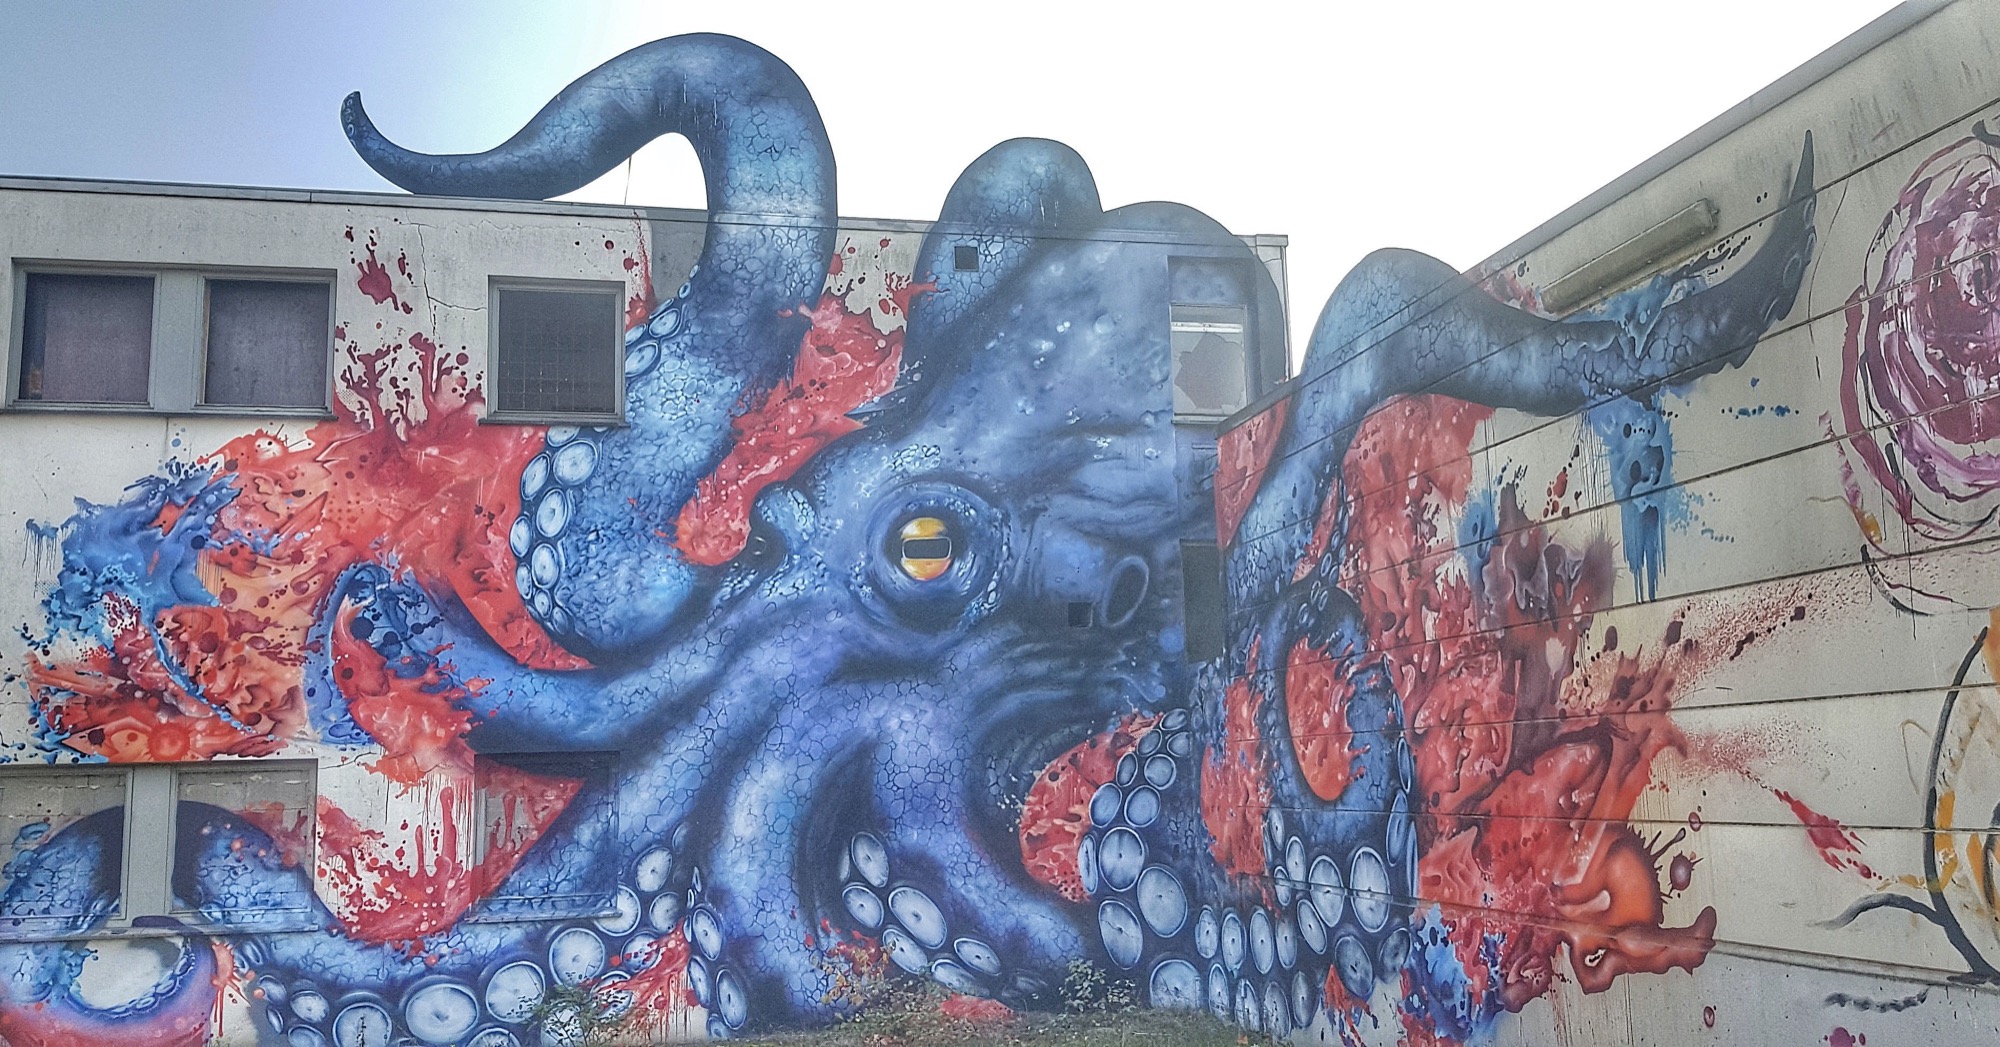 Graffiti 502 Octopuss capturé par Cure_for_the_mind à Esch/Alzette Luxembourg